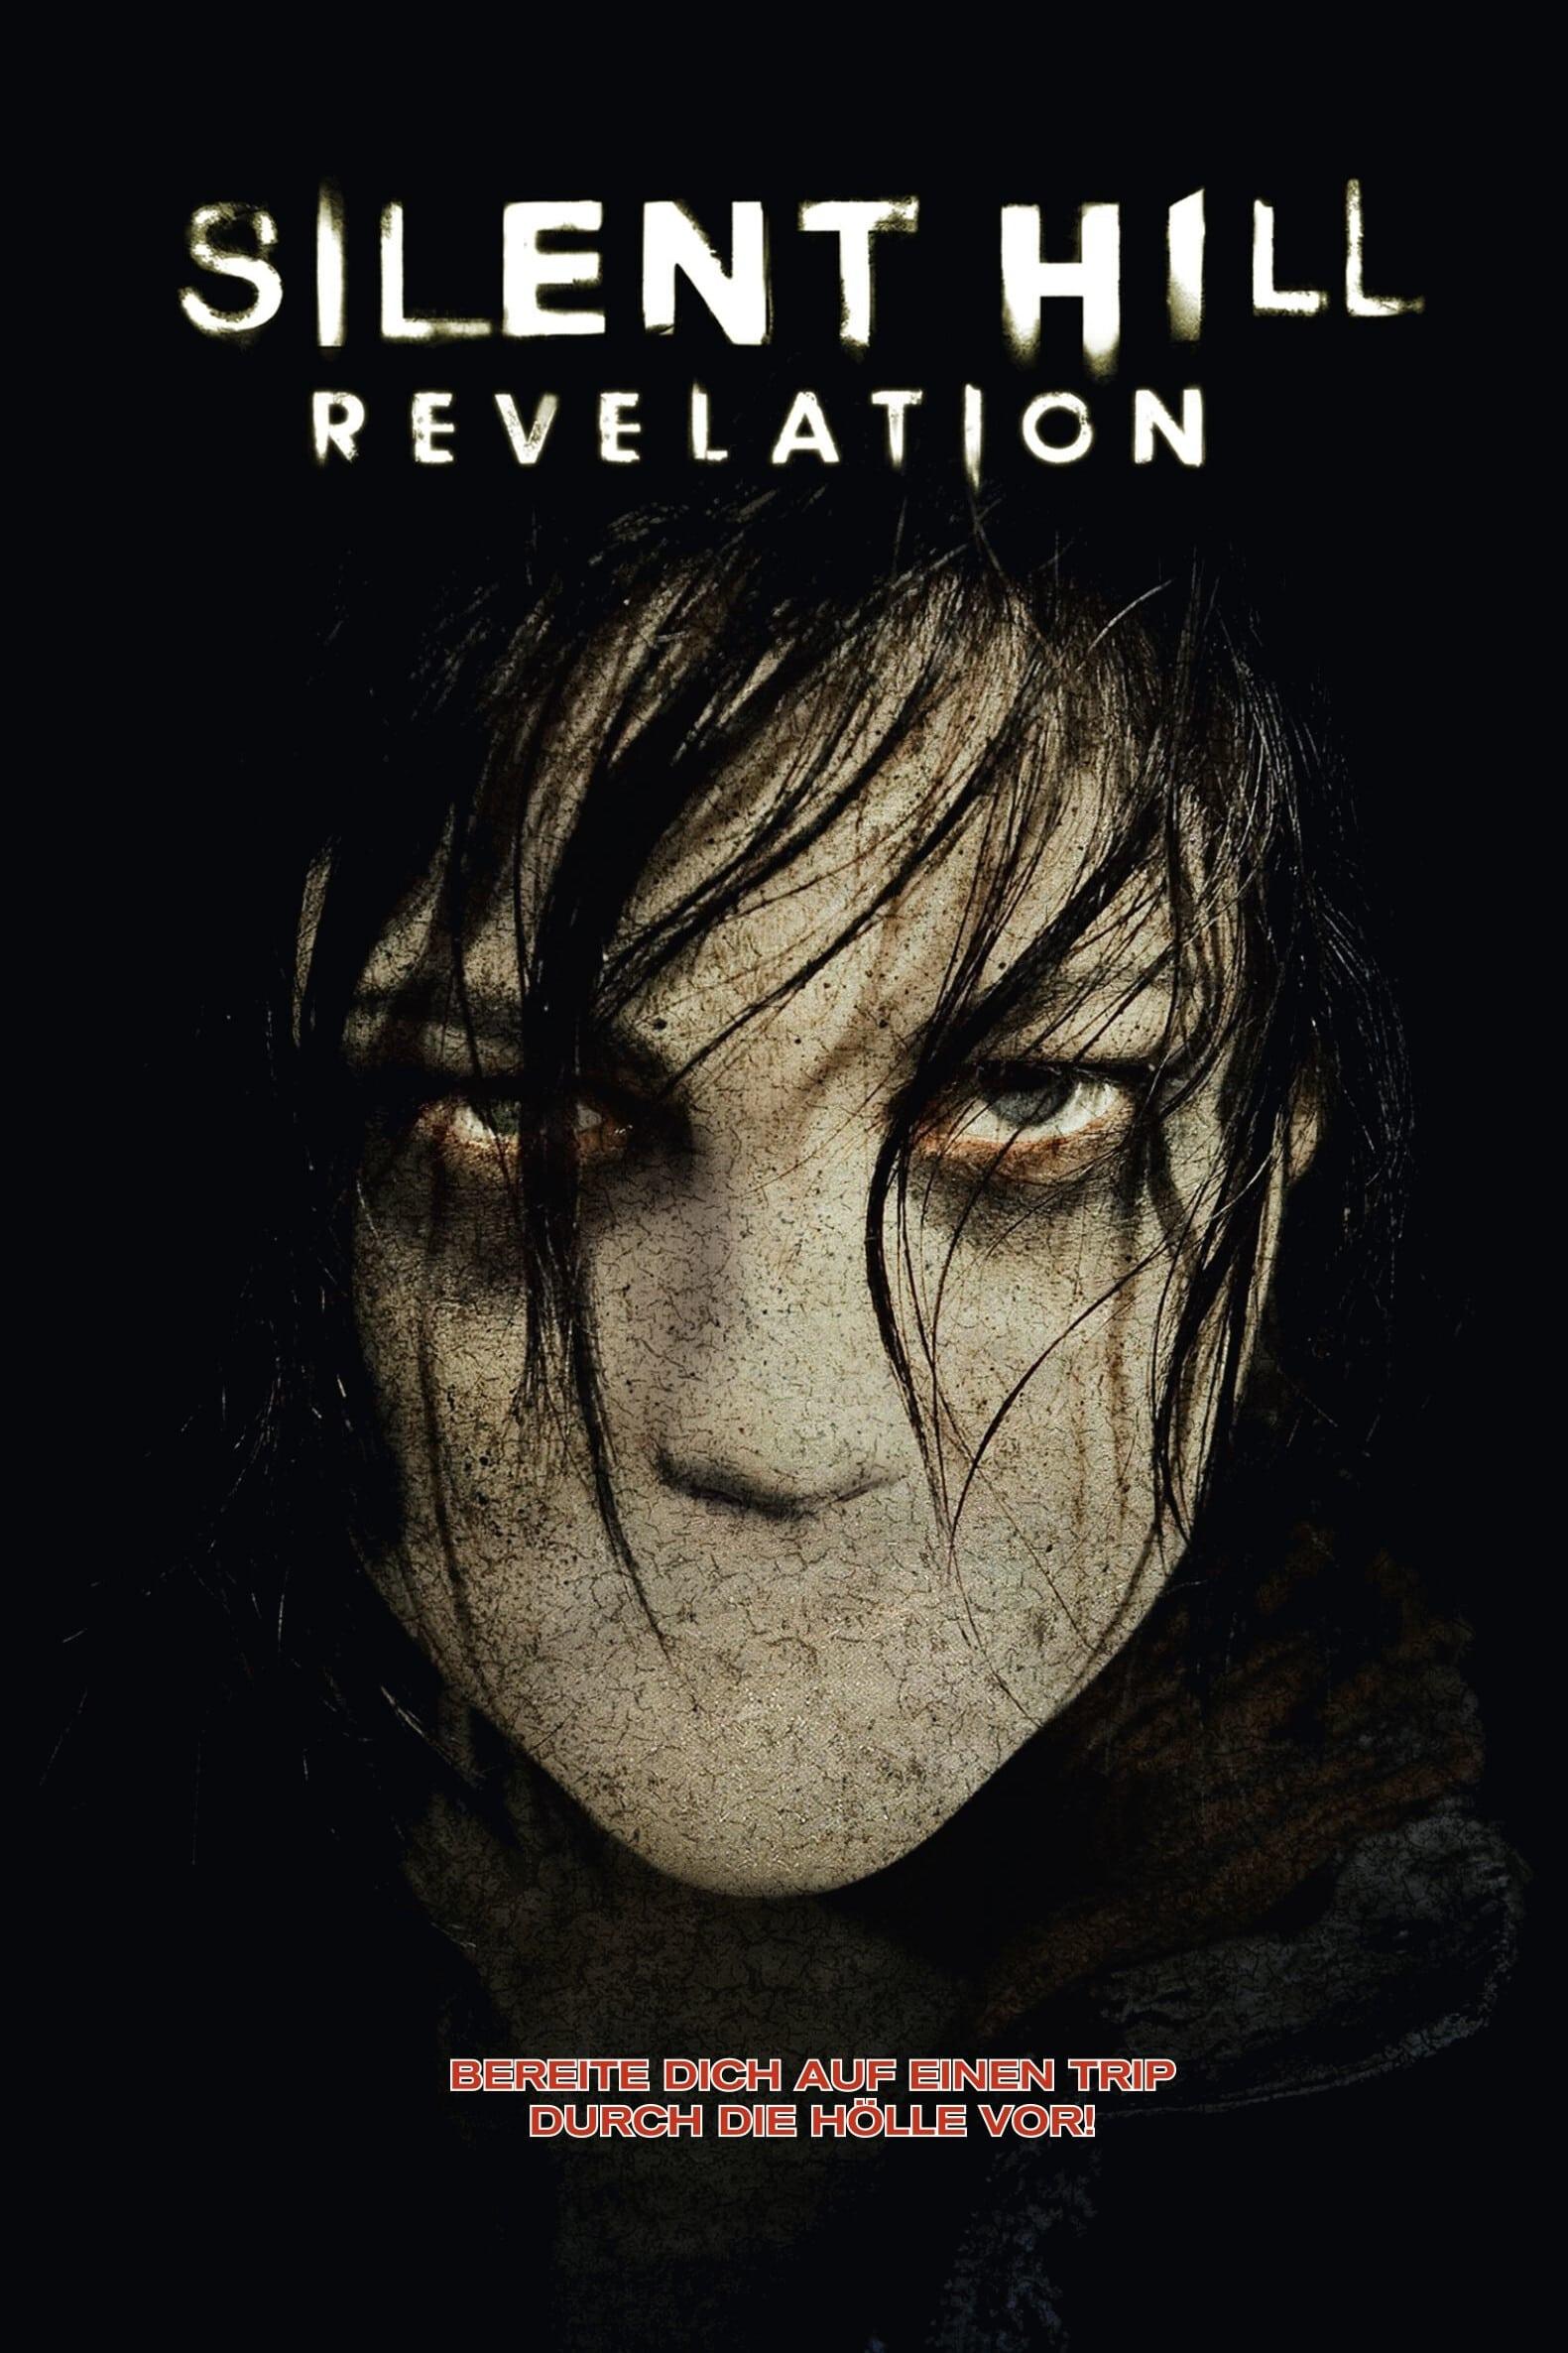 Silent Hill: Revelation 3D poster